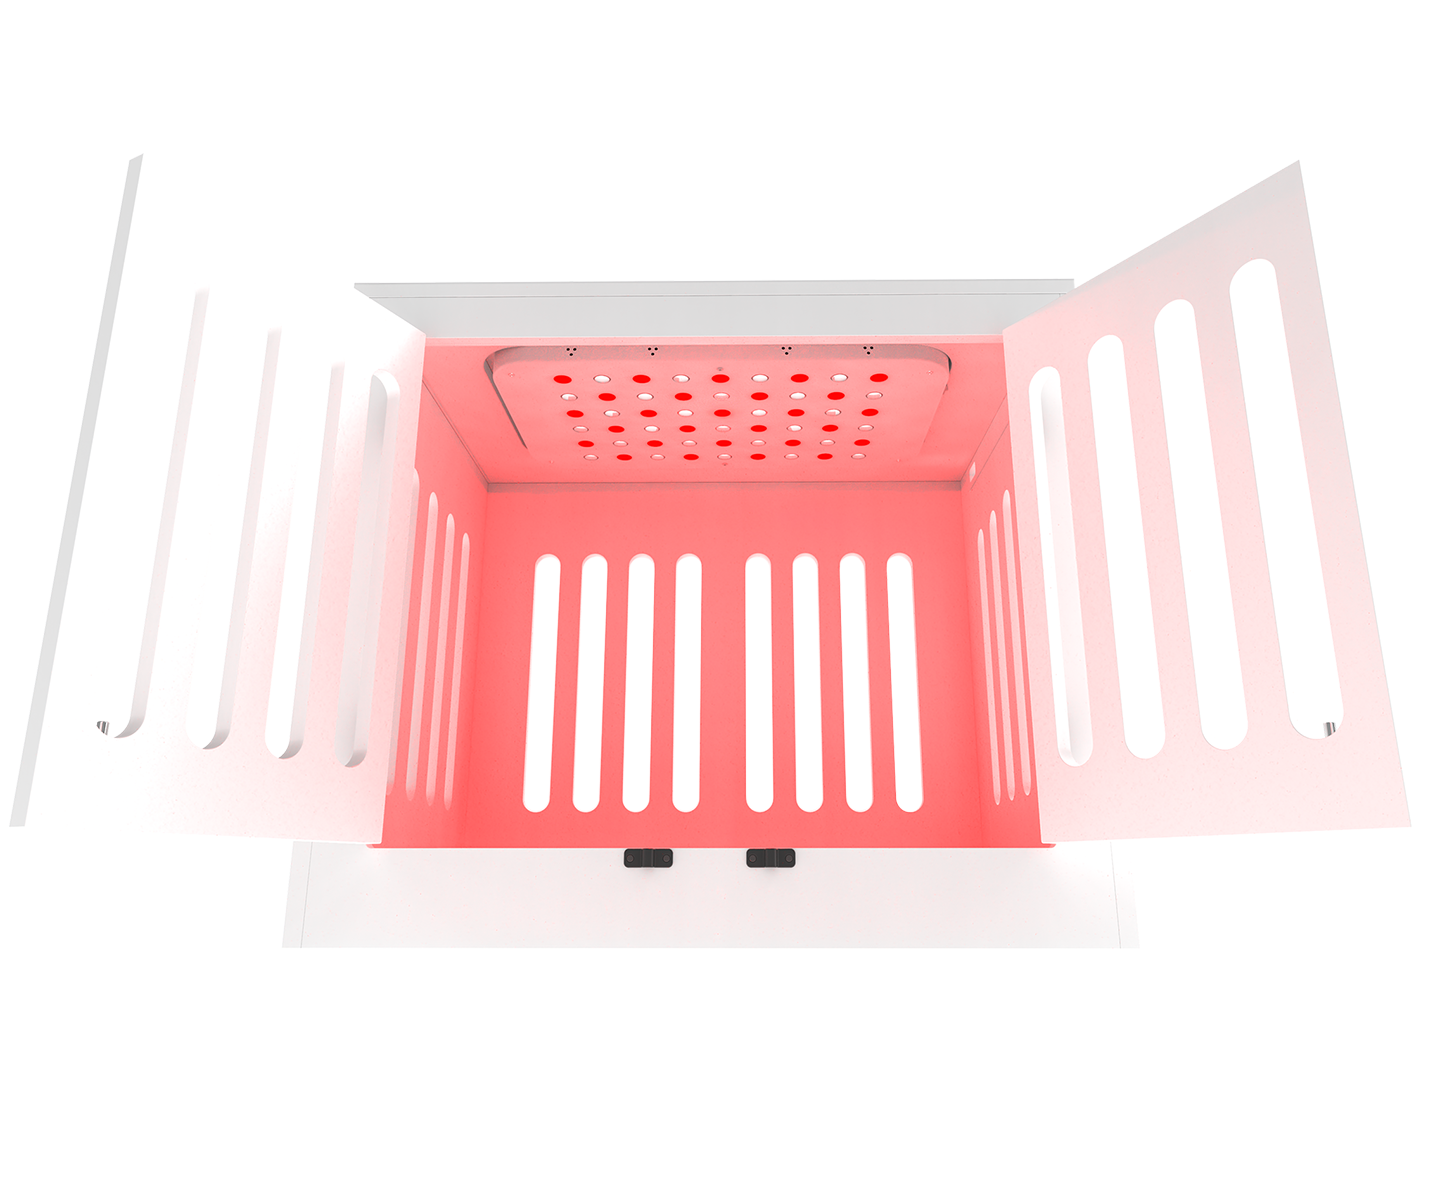 Glowbie Crate